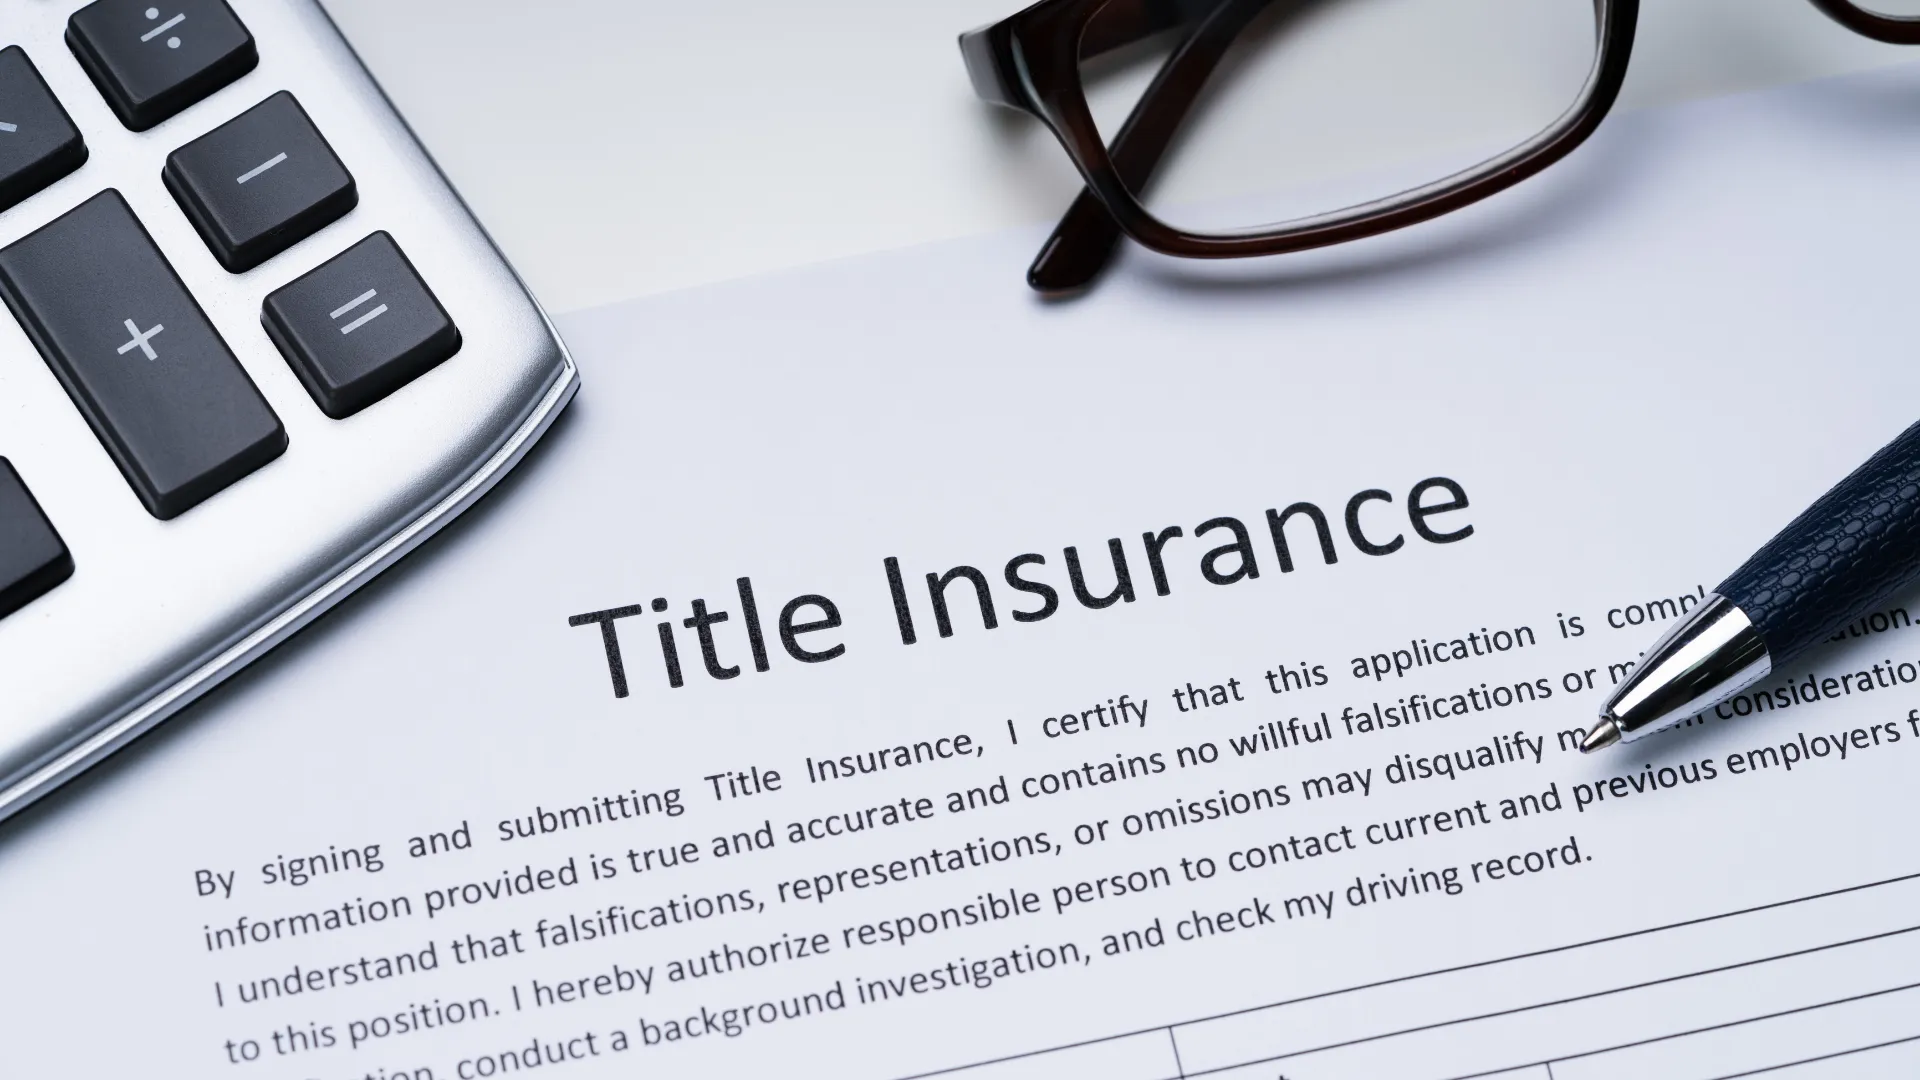 소유권등기보험(Title Insurance)의 필요성